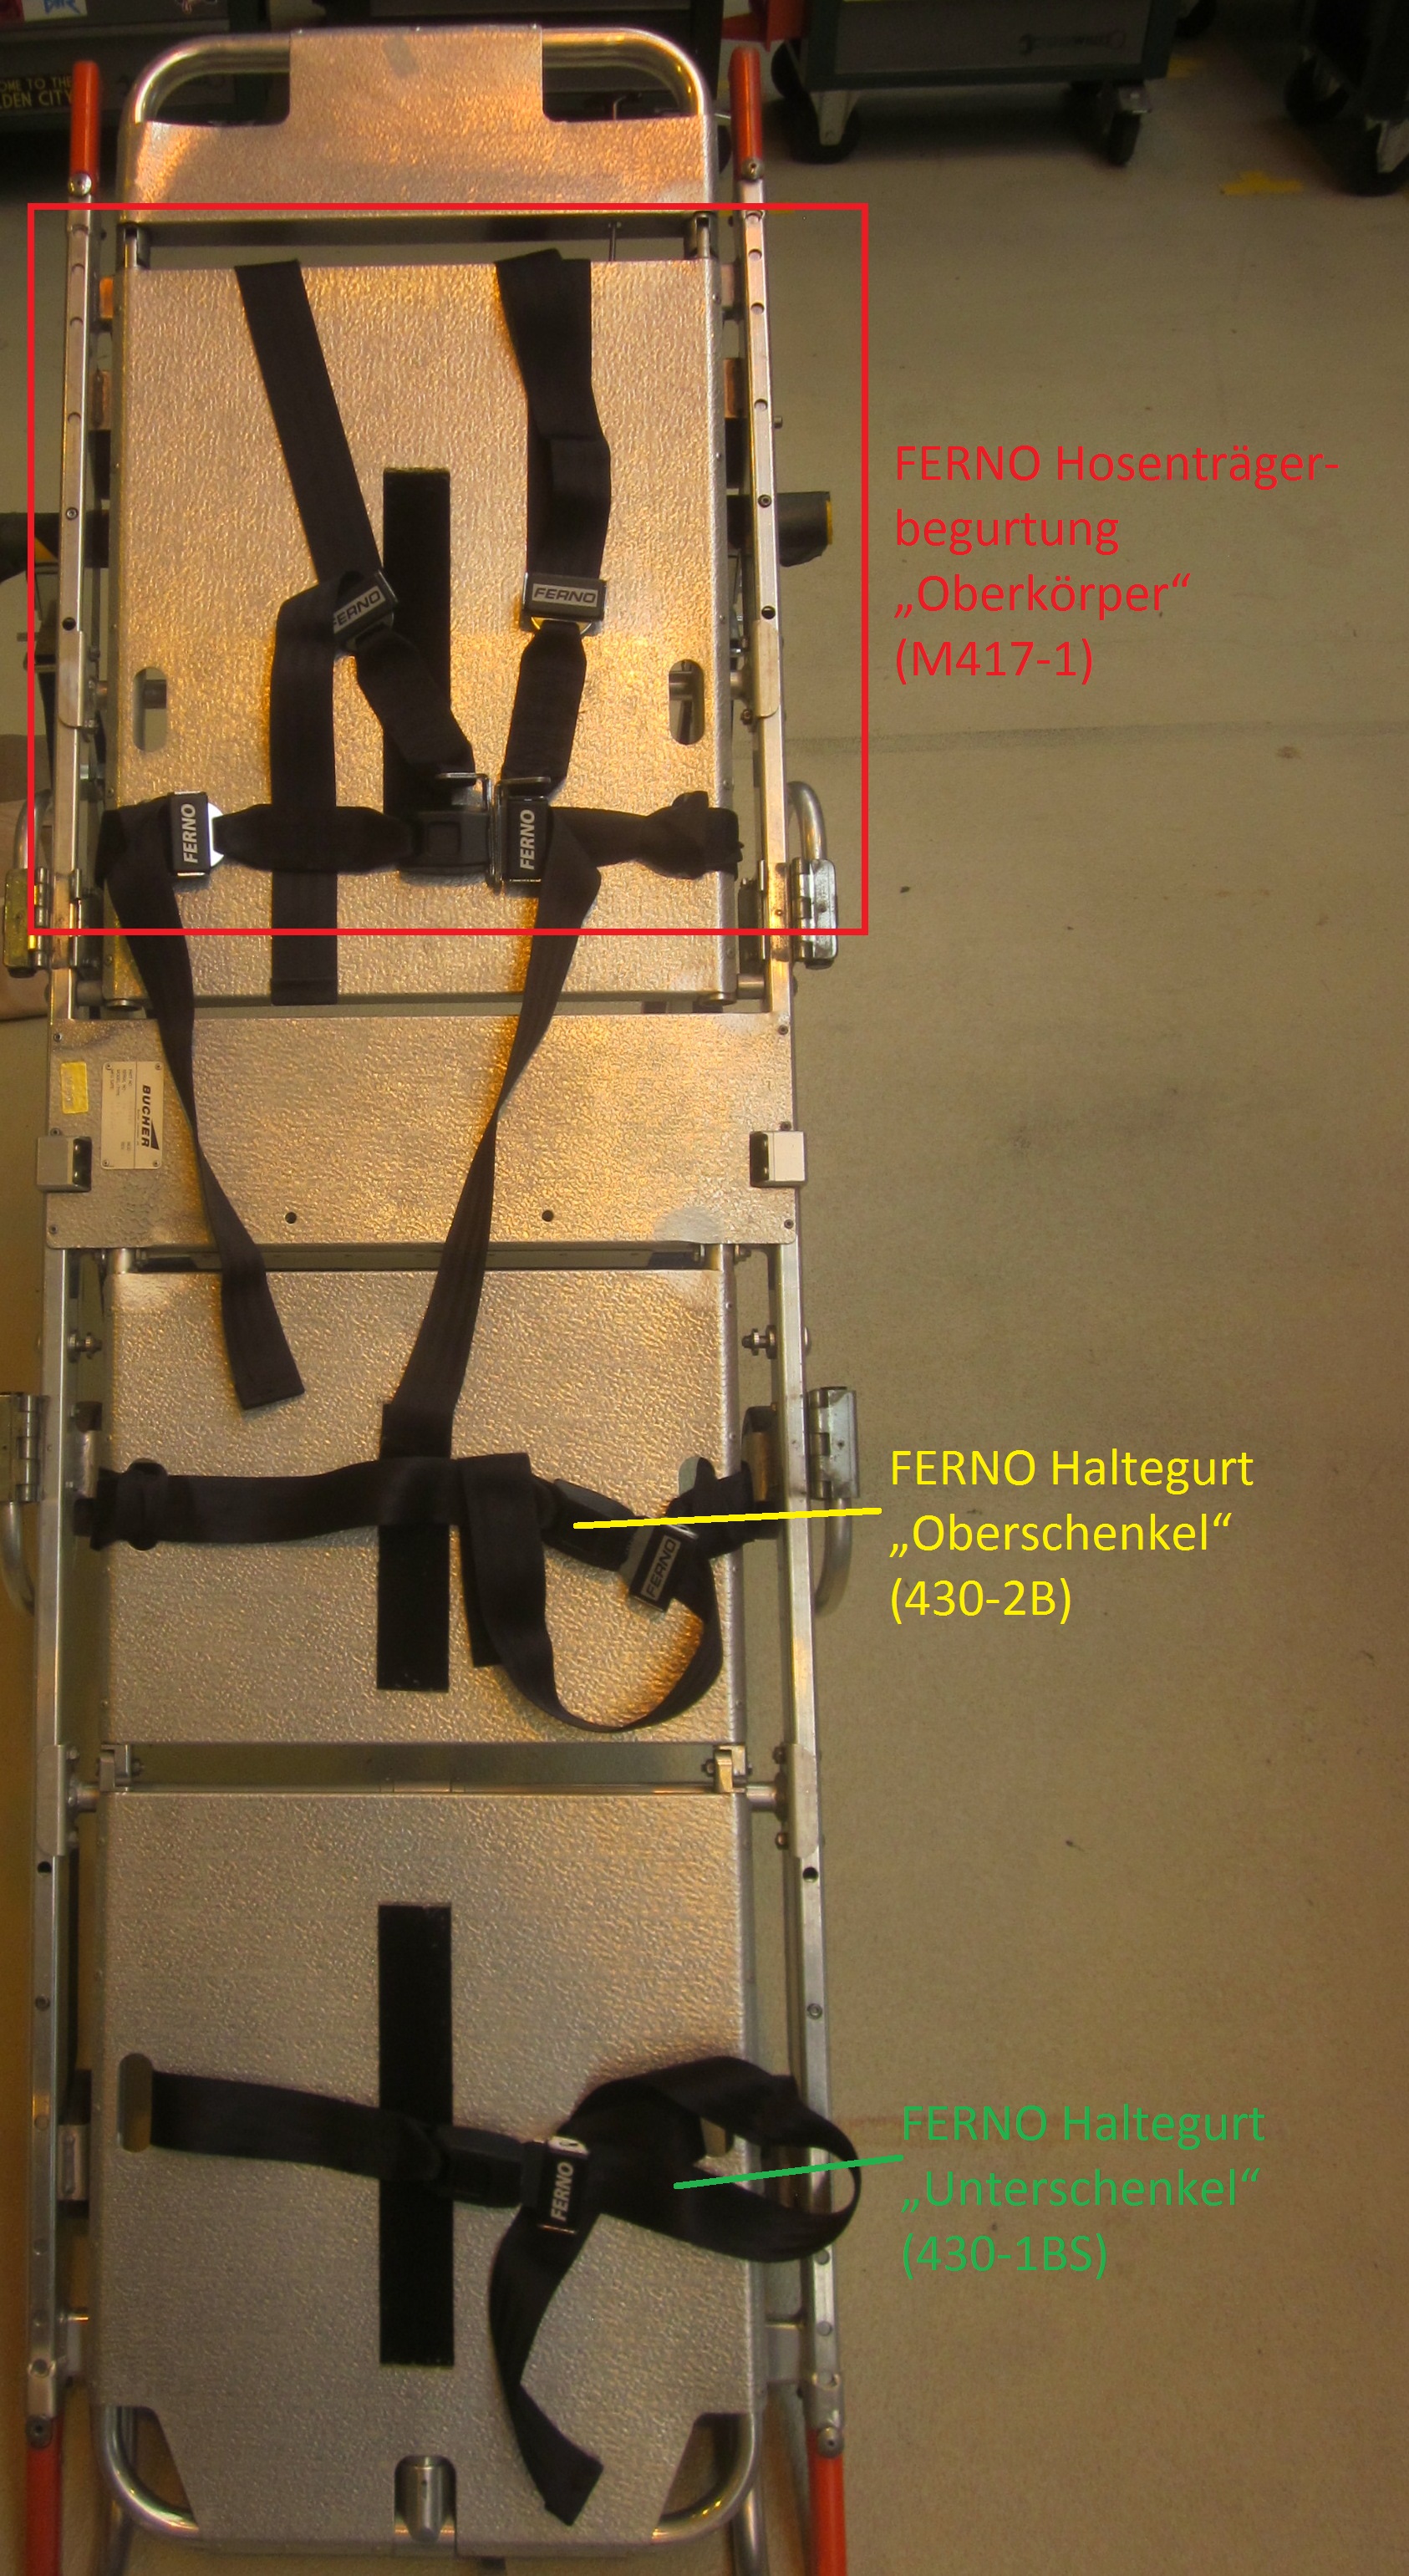  FERNO Hosenträgerbegurtung - Oberkörper schwarz mit Drucktastenschlos X14319